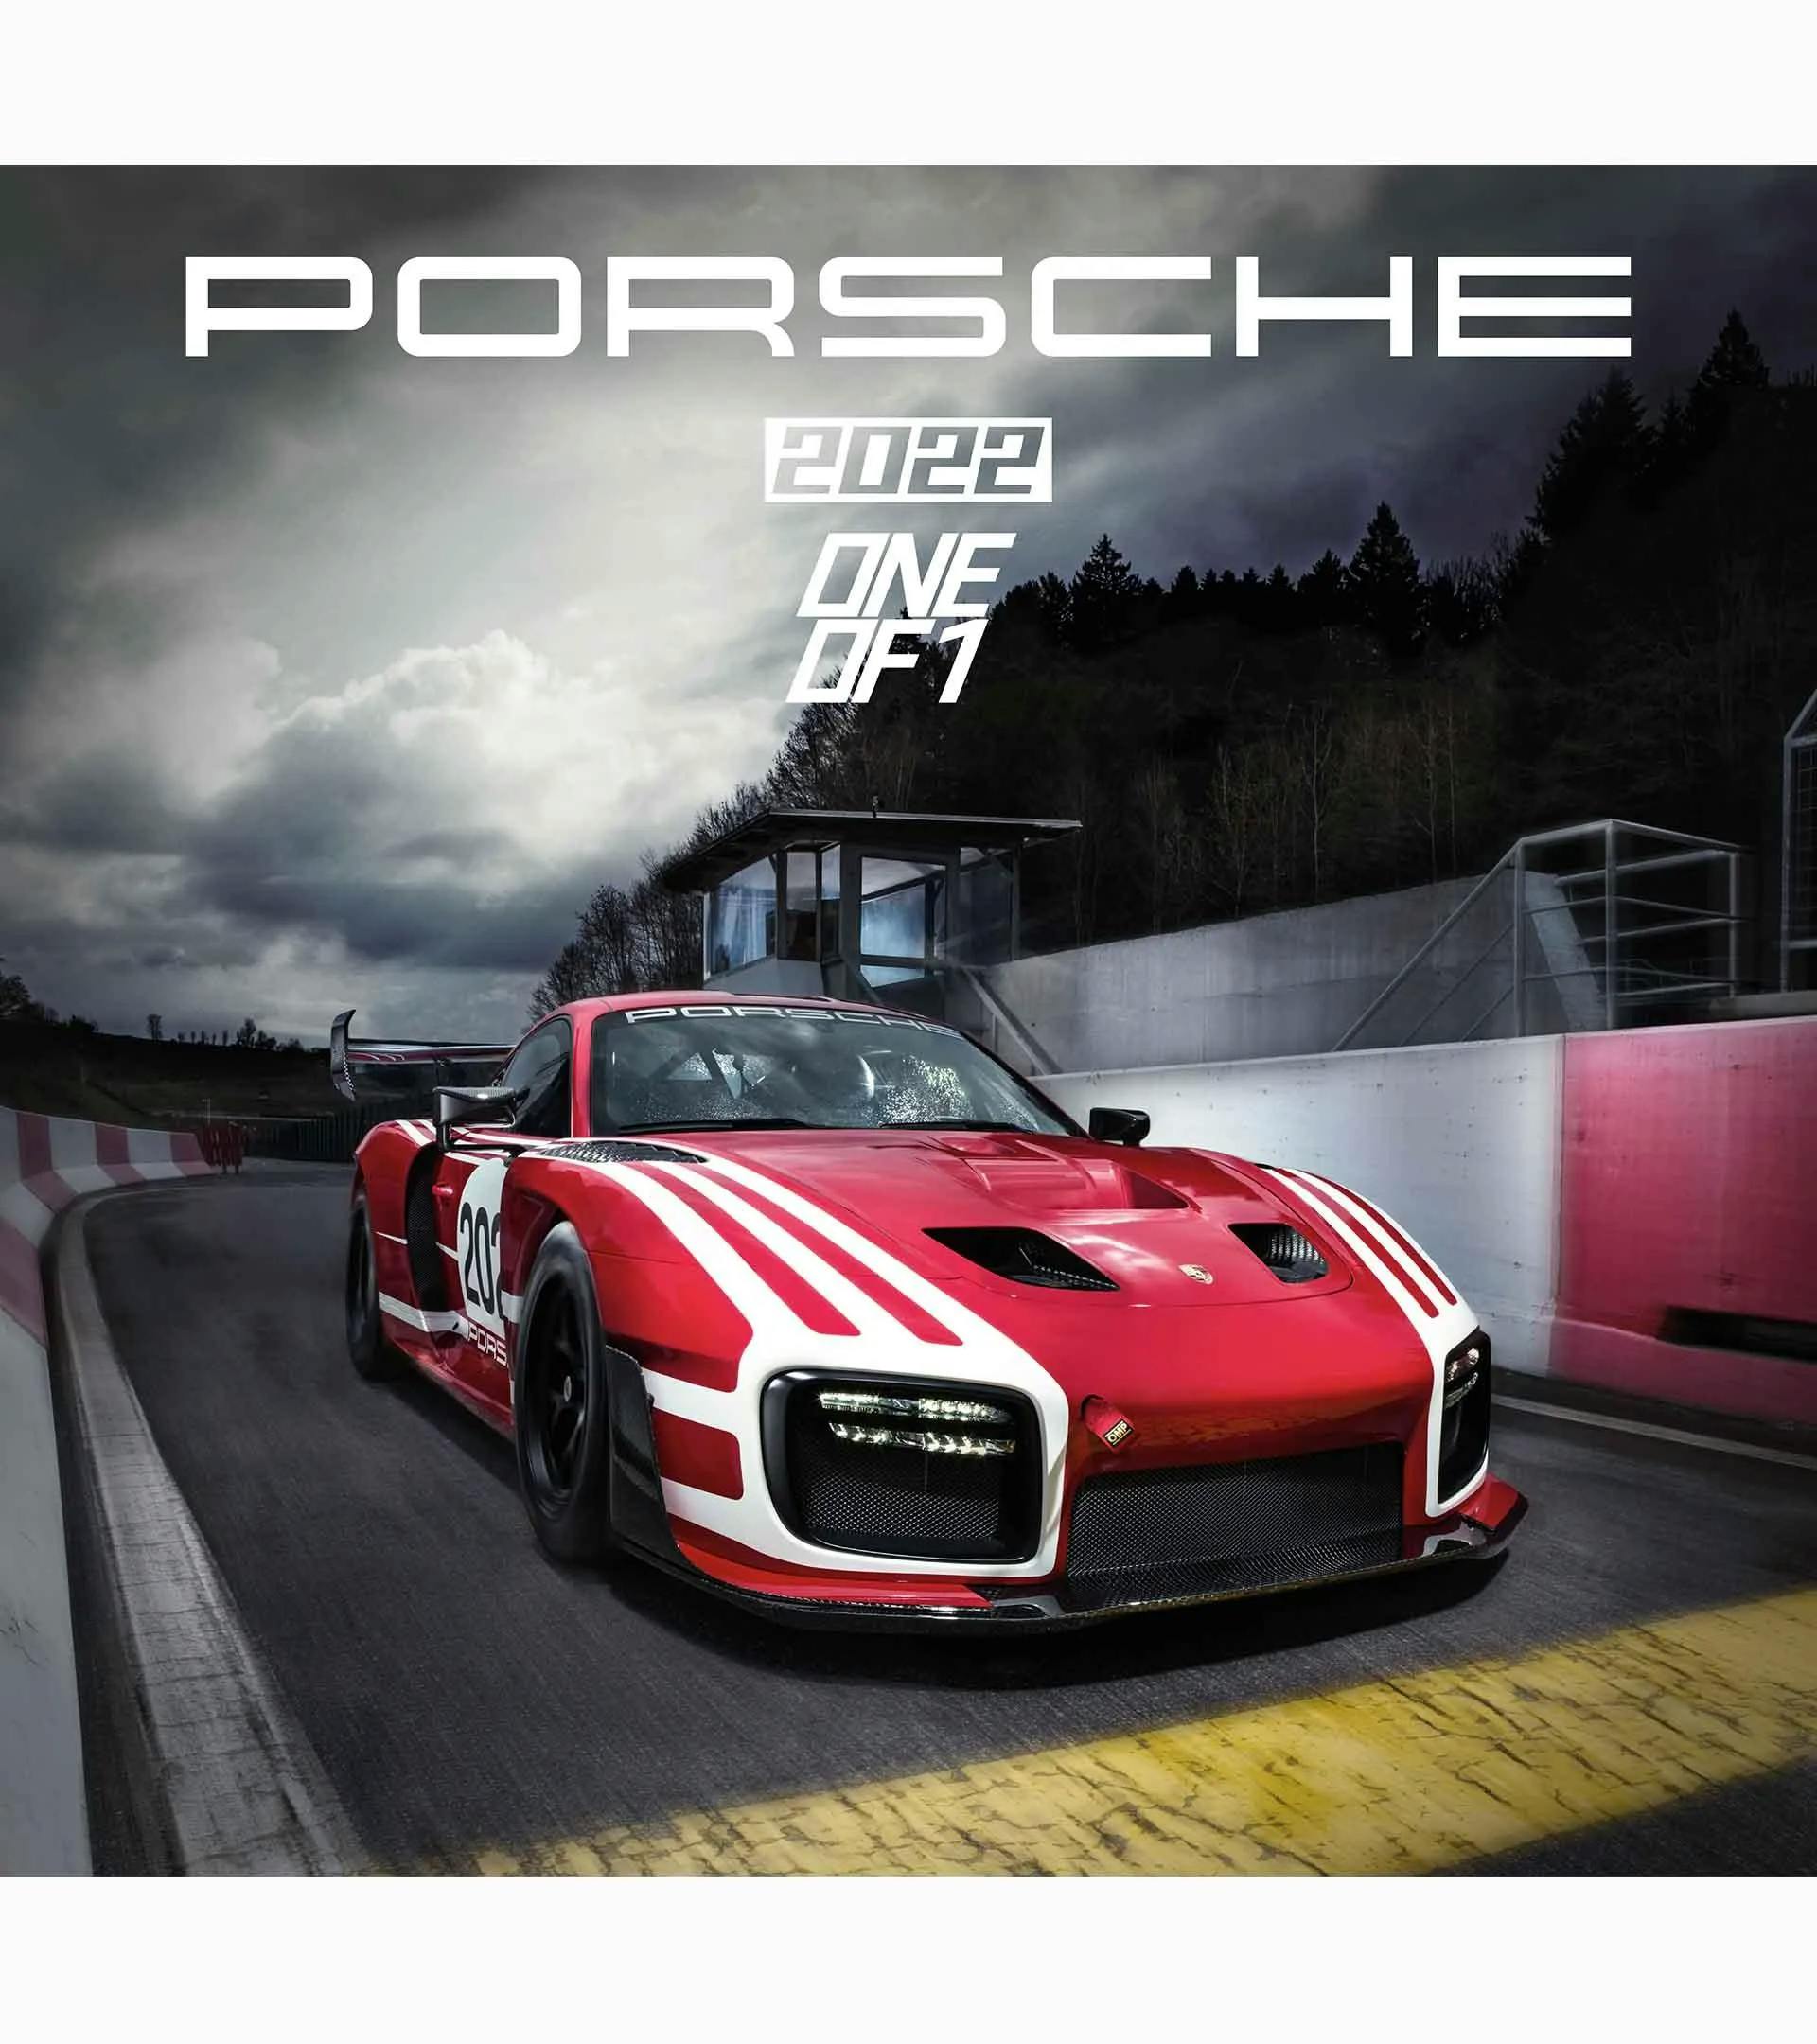 Calendario Porsche 2022 "One Of 1" 1